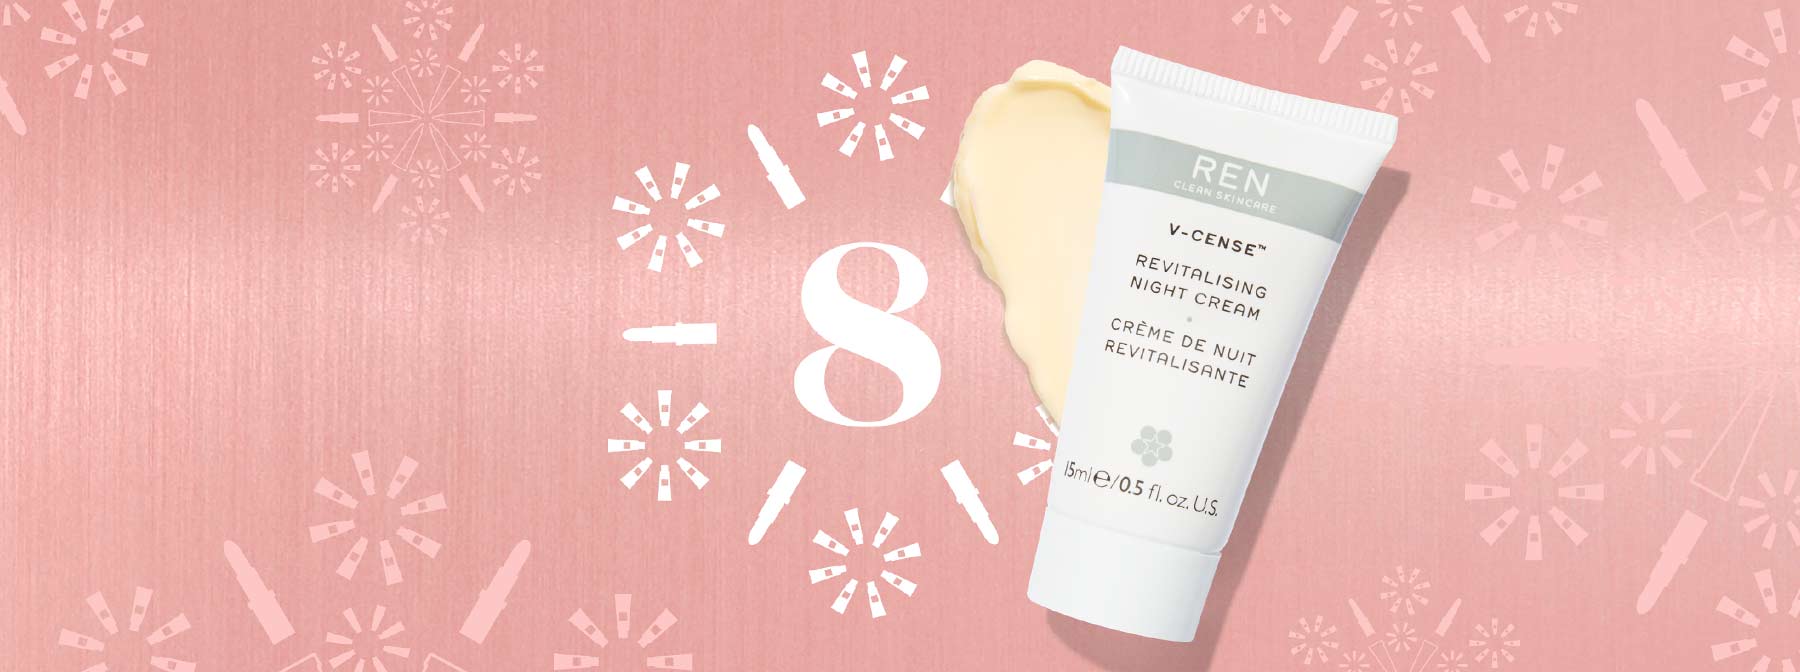 Winter Skincare: Day 8 – REN V-Cense Night Cream